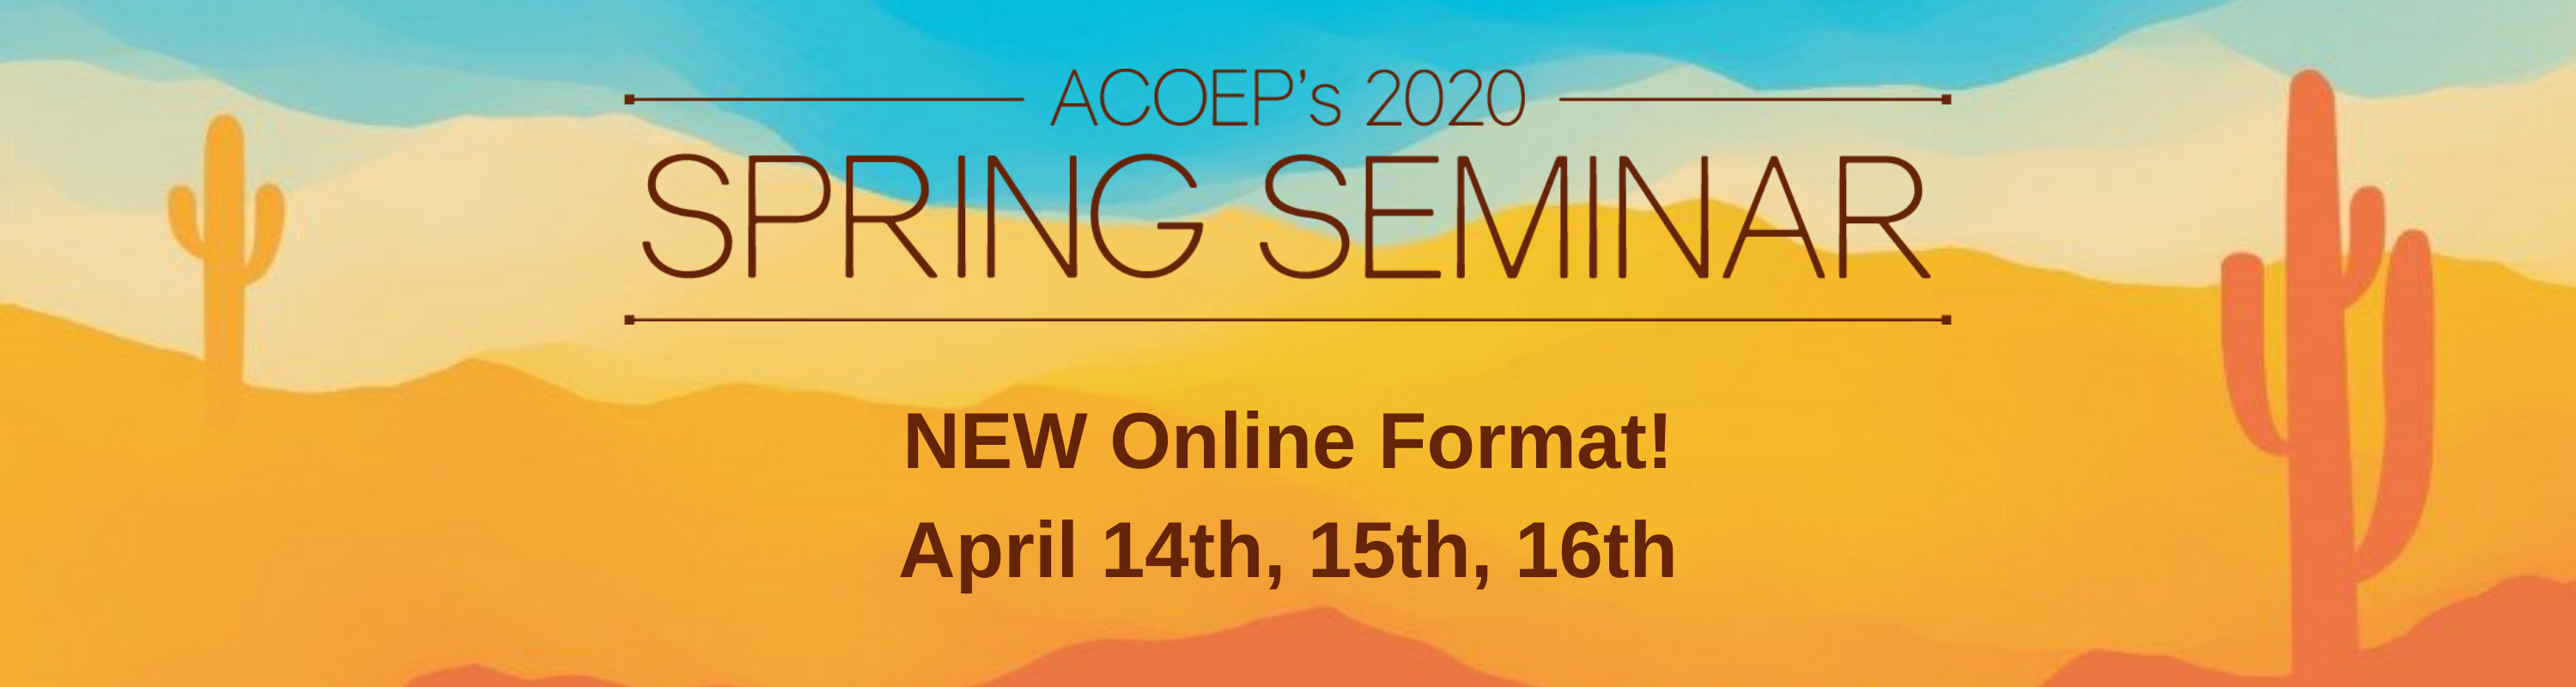 ACOEP's 2020 Spring Seminar is Moving Online! ACOEP